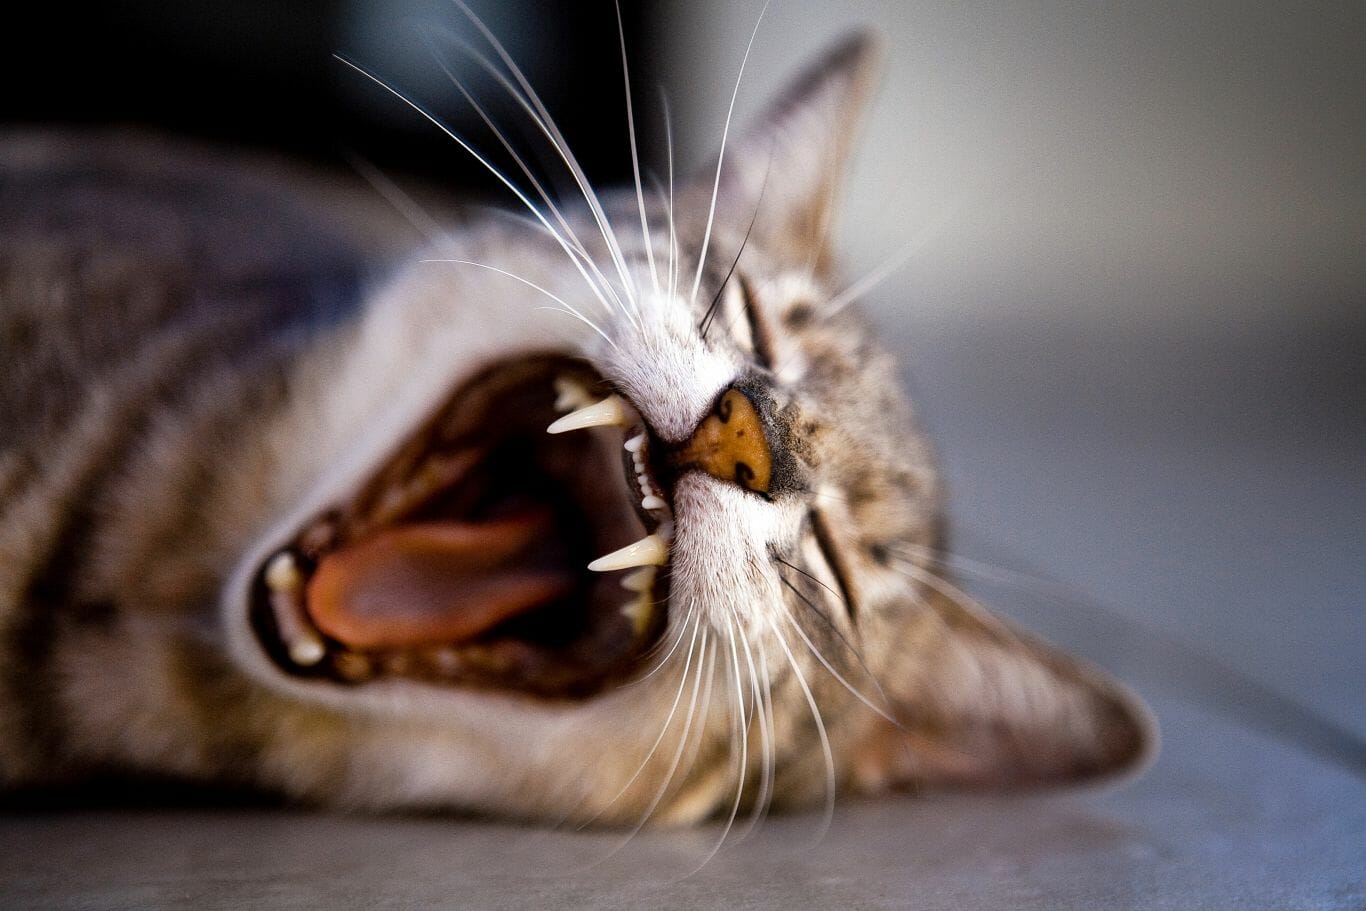 Aprenda agora mesmo 5 truques interessantes e eficientes para acalmar gato com raiva 